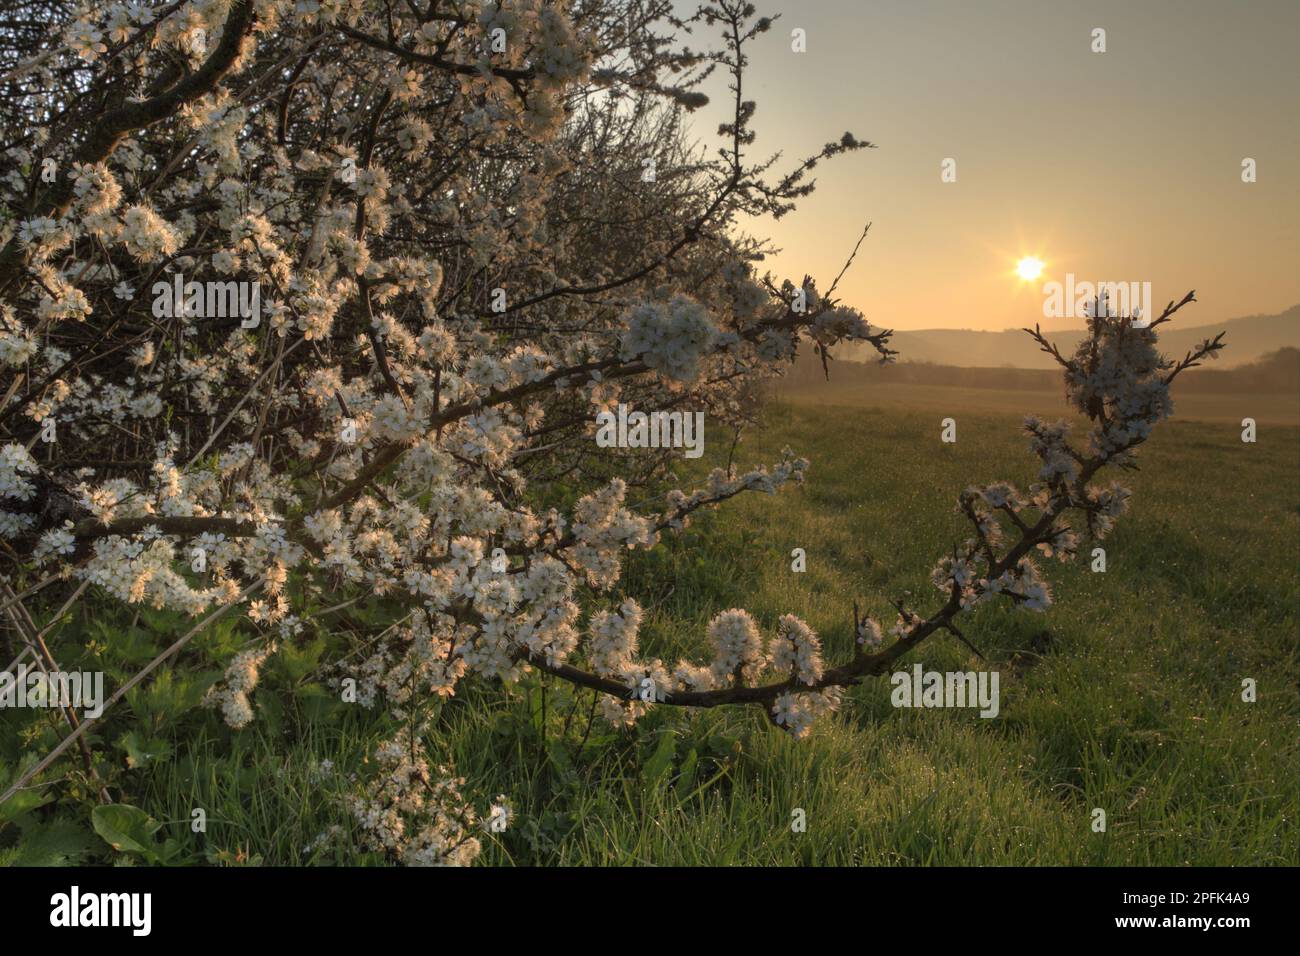 Florissant, le noir (Prunus spinosa) pousse dans la haie d'une ferme biologique au coucher du soleil, Powys, pays de Galles, Royaume-Uni Banque D'Images